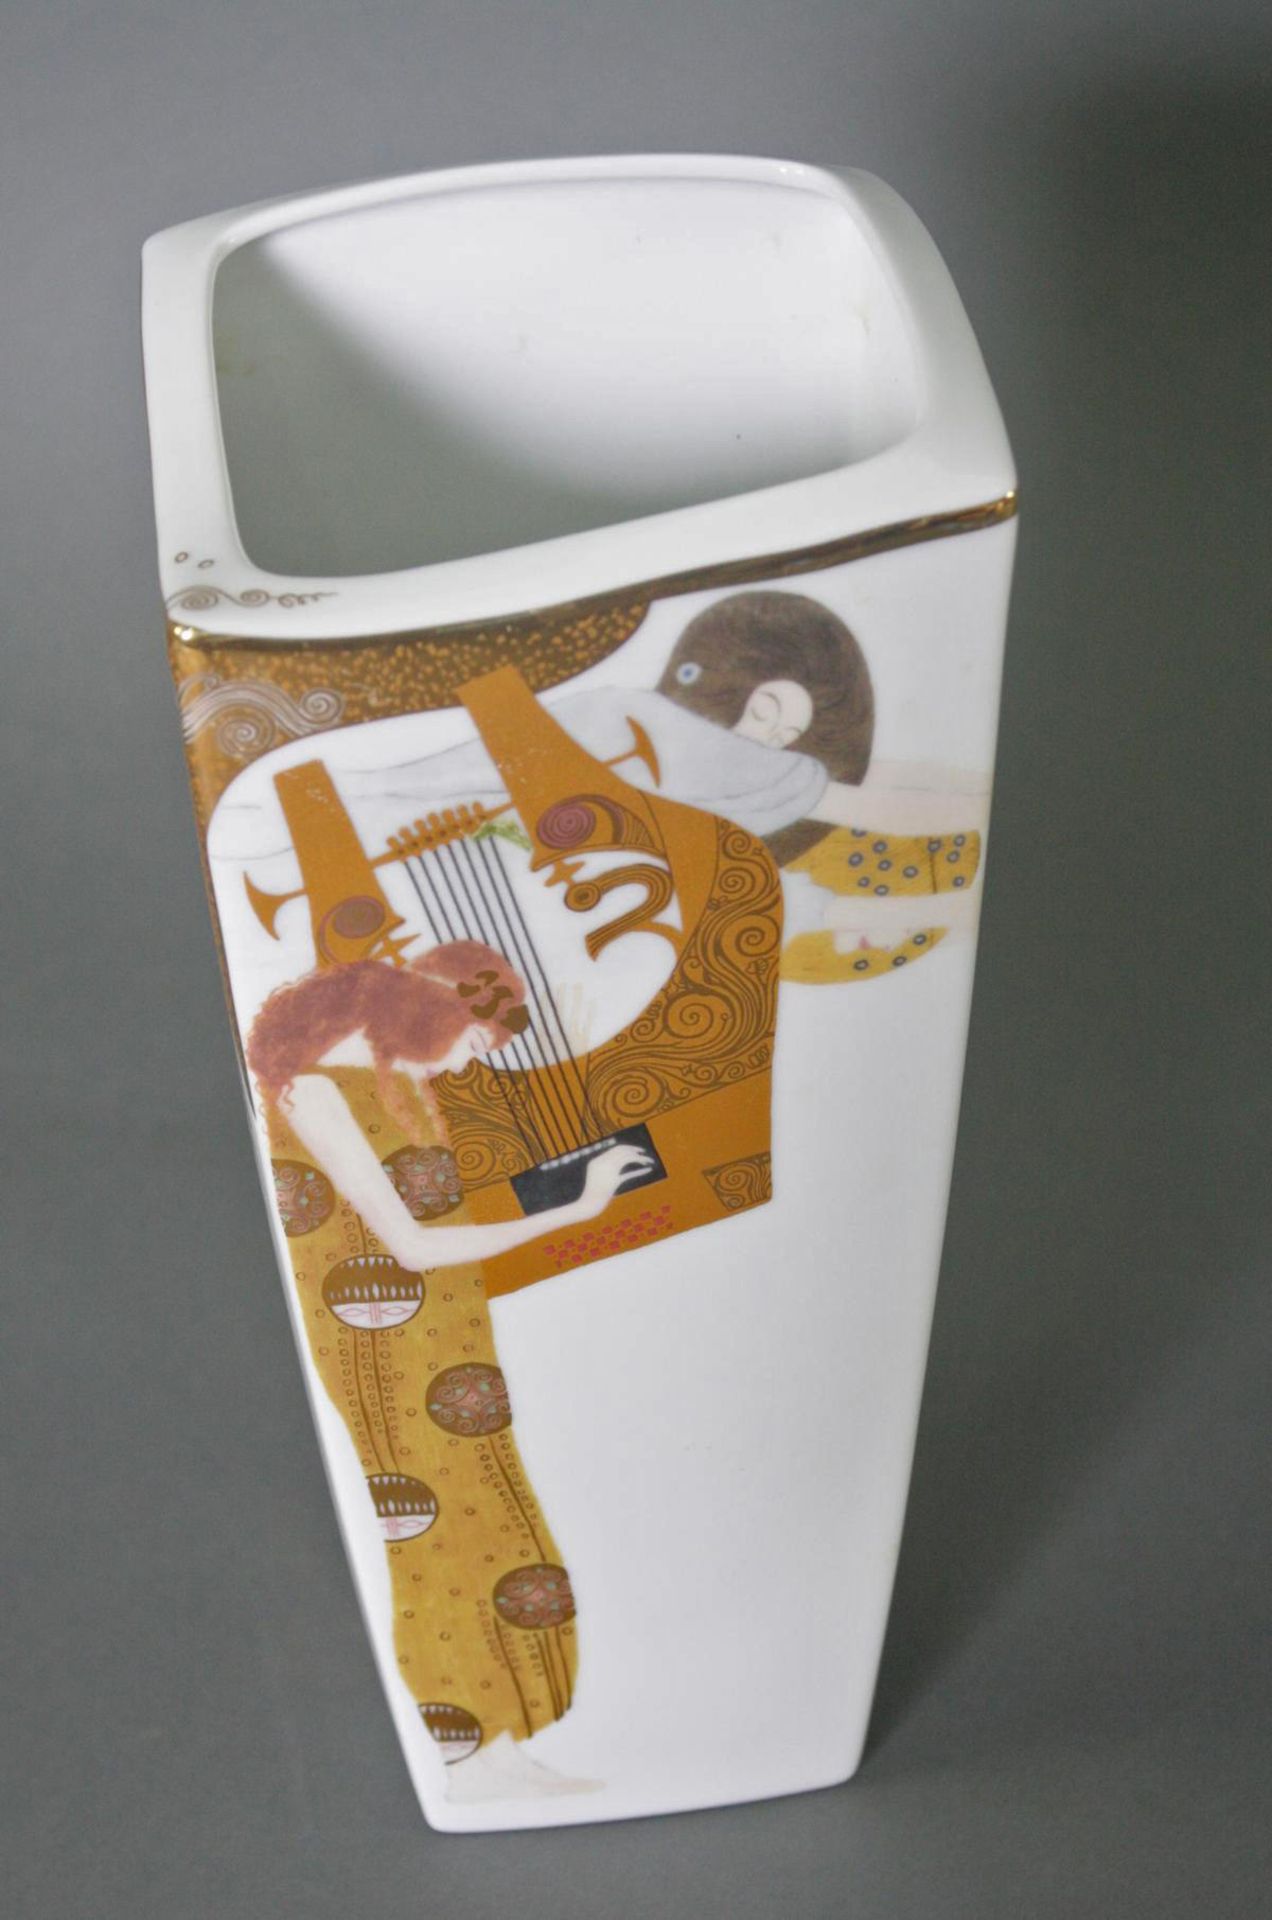 Zwei Goebel Artis Orbis Gustav Klimt Vasen. Porzellan und Glas - Bild 3 aus 7